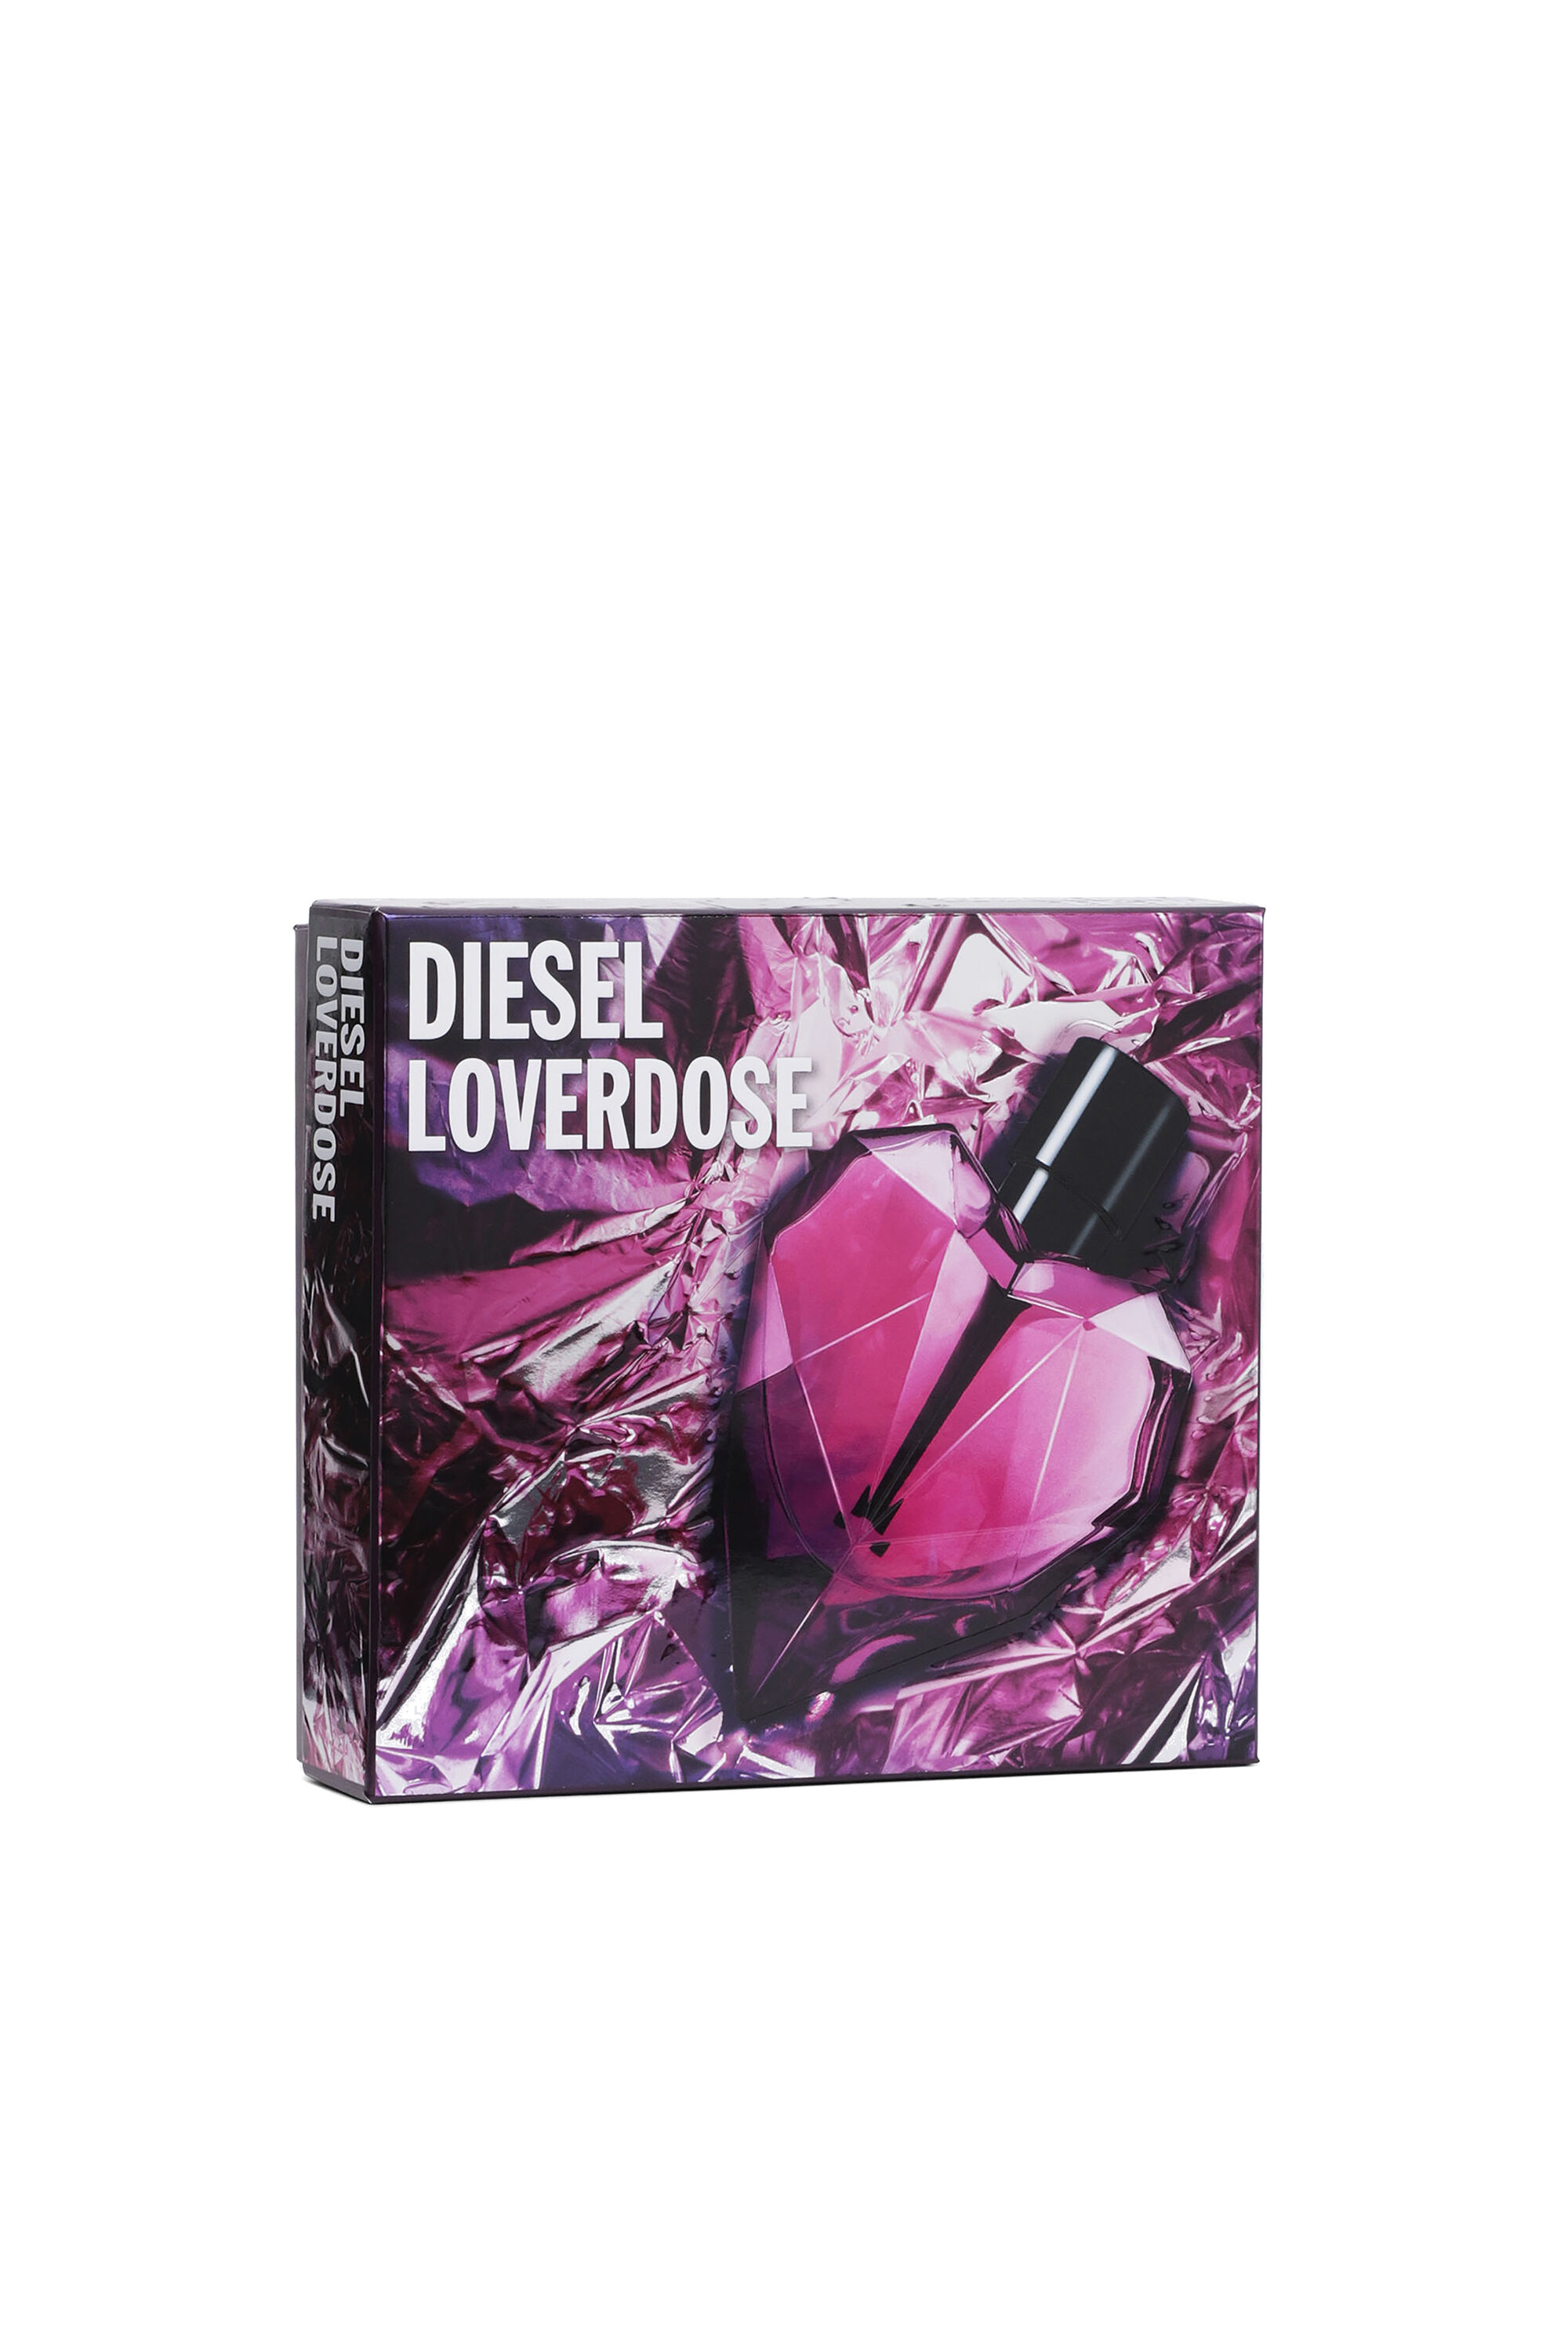 Diesel - LOVERDOSE 30ML GIFT SET, Genérico - Image 1